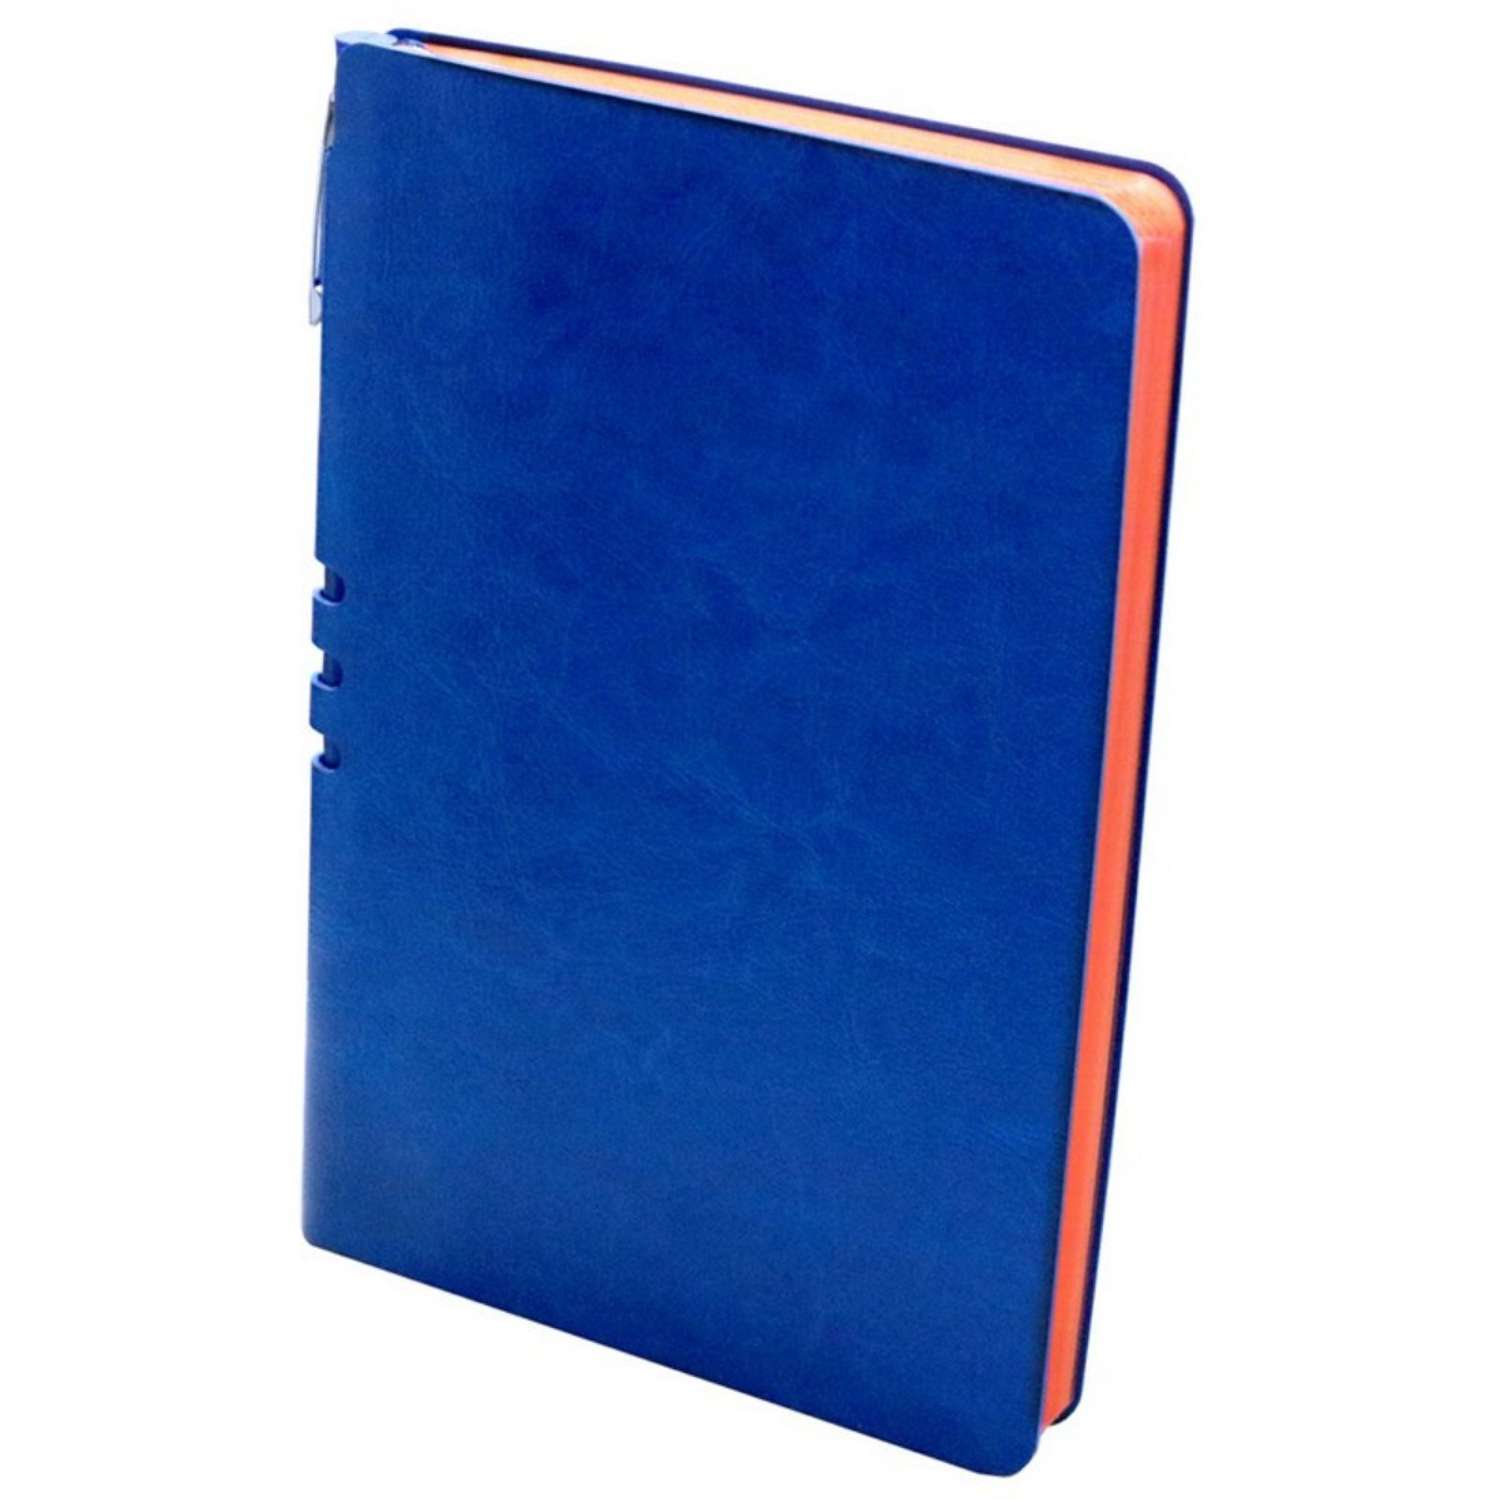 Бизнес-тетрадь Attache Light Book А5 112 листов линия цветной срез кожзаменитель ярко-синий - фото 2